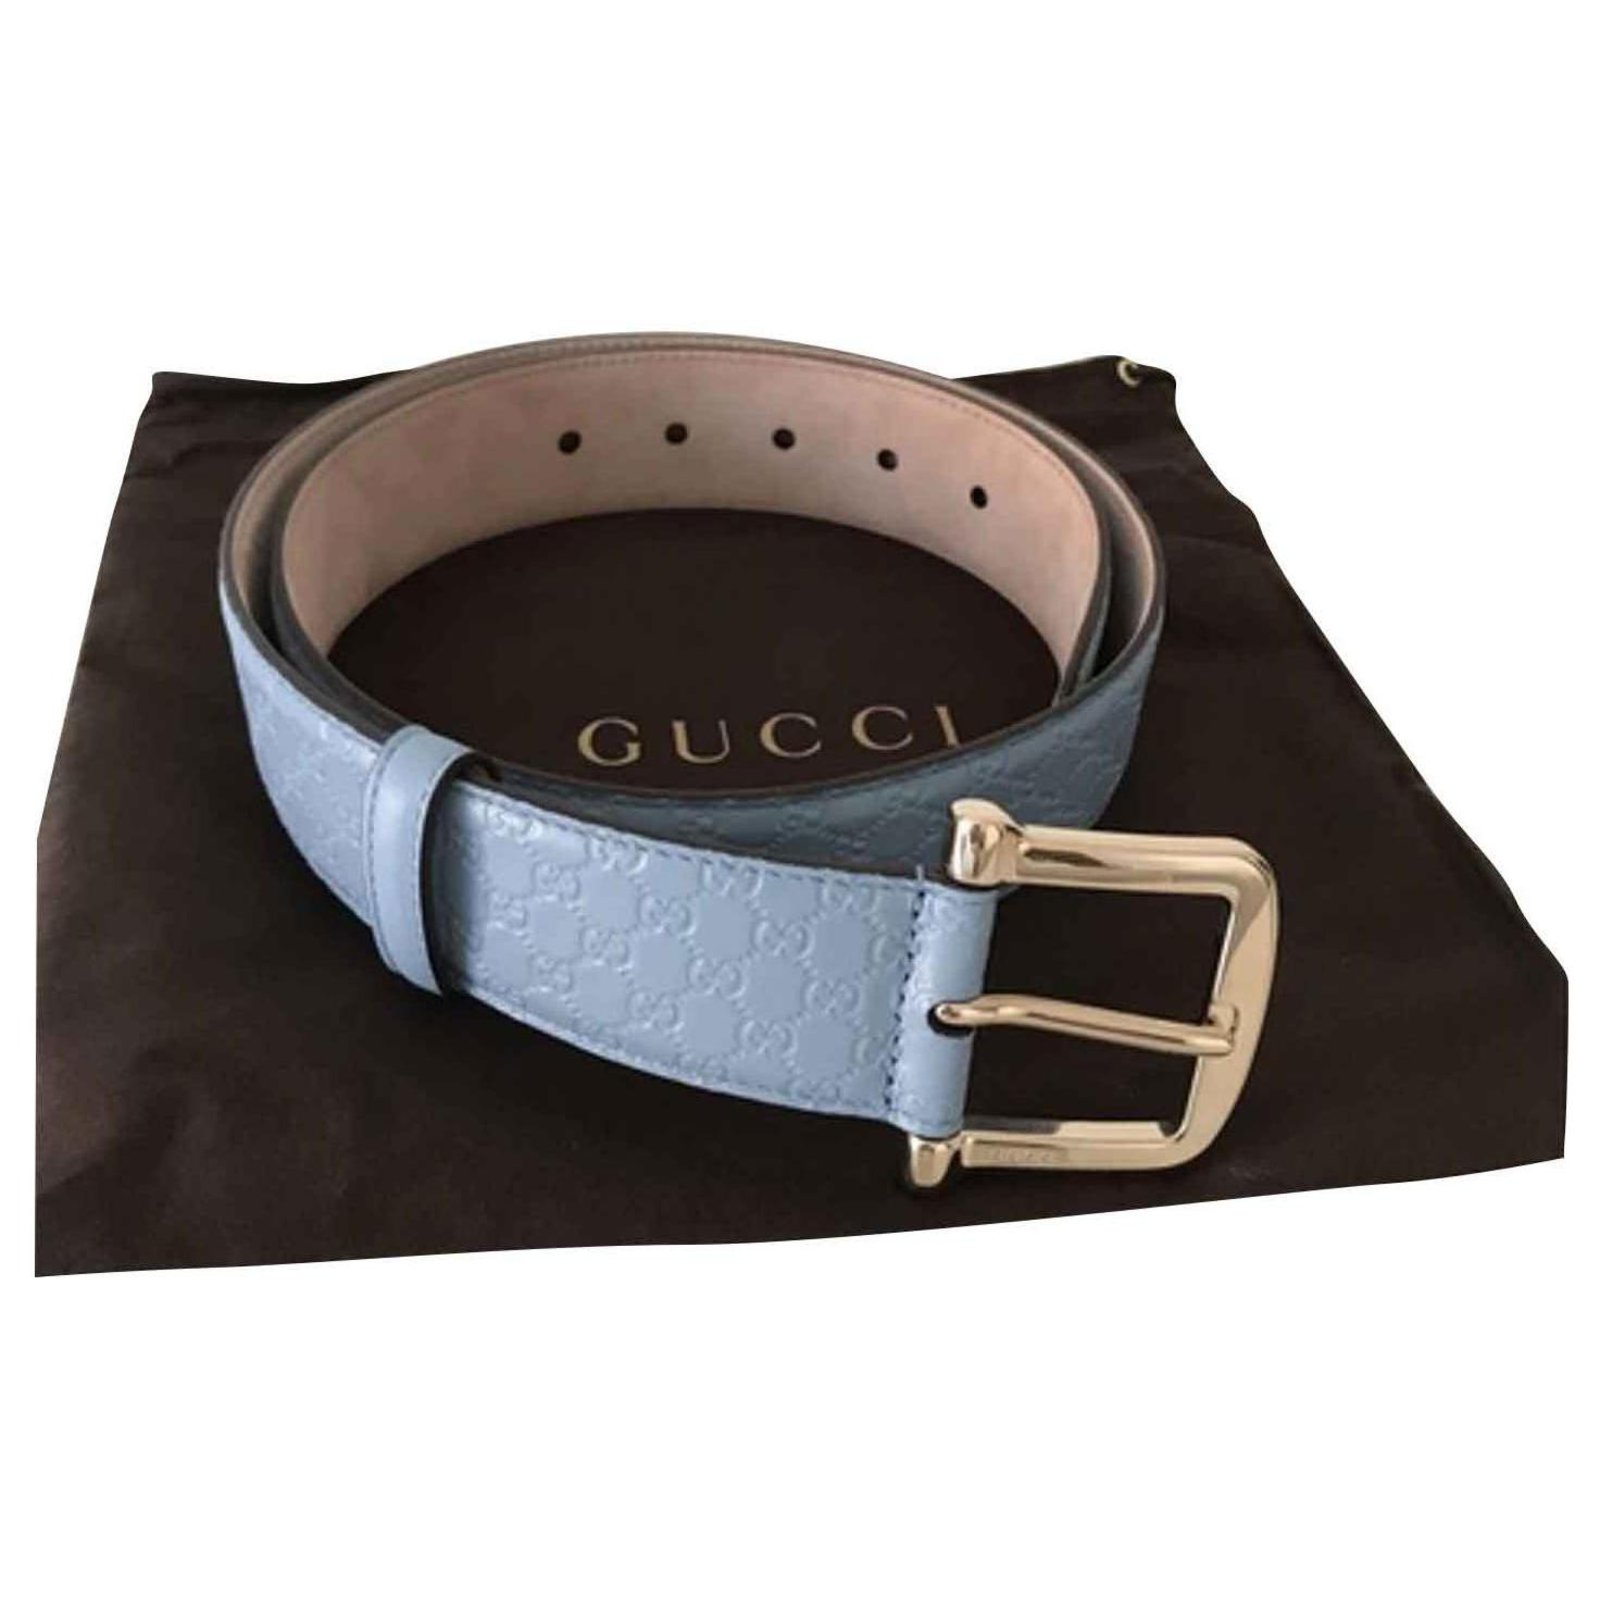 Gucci GUCCI BELT AZZURRA NEW Belts 